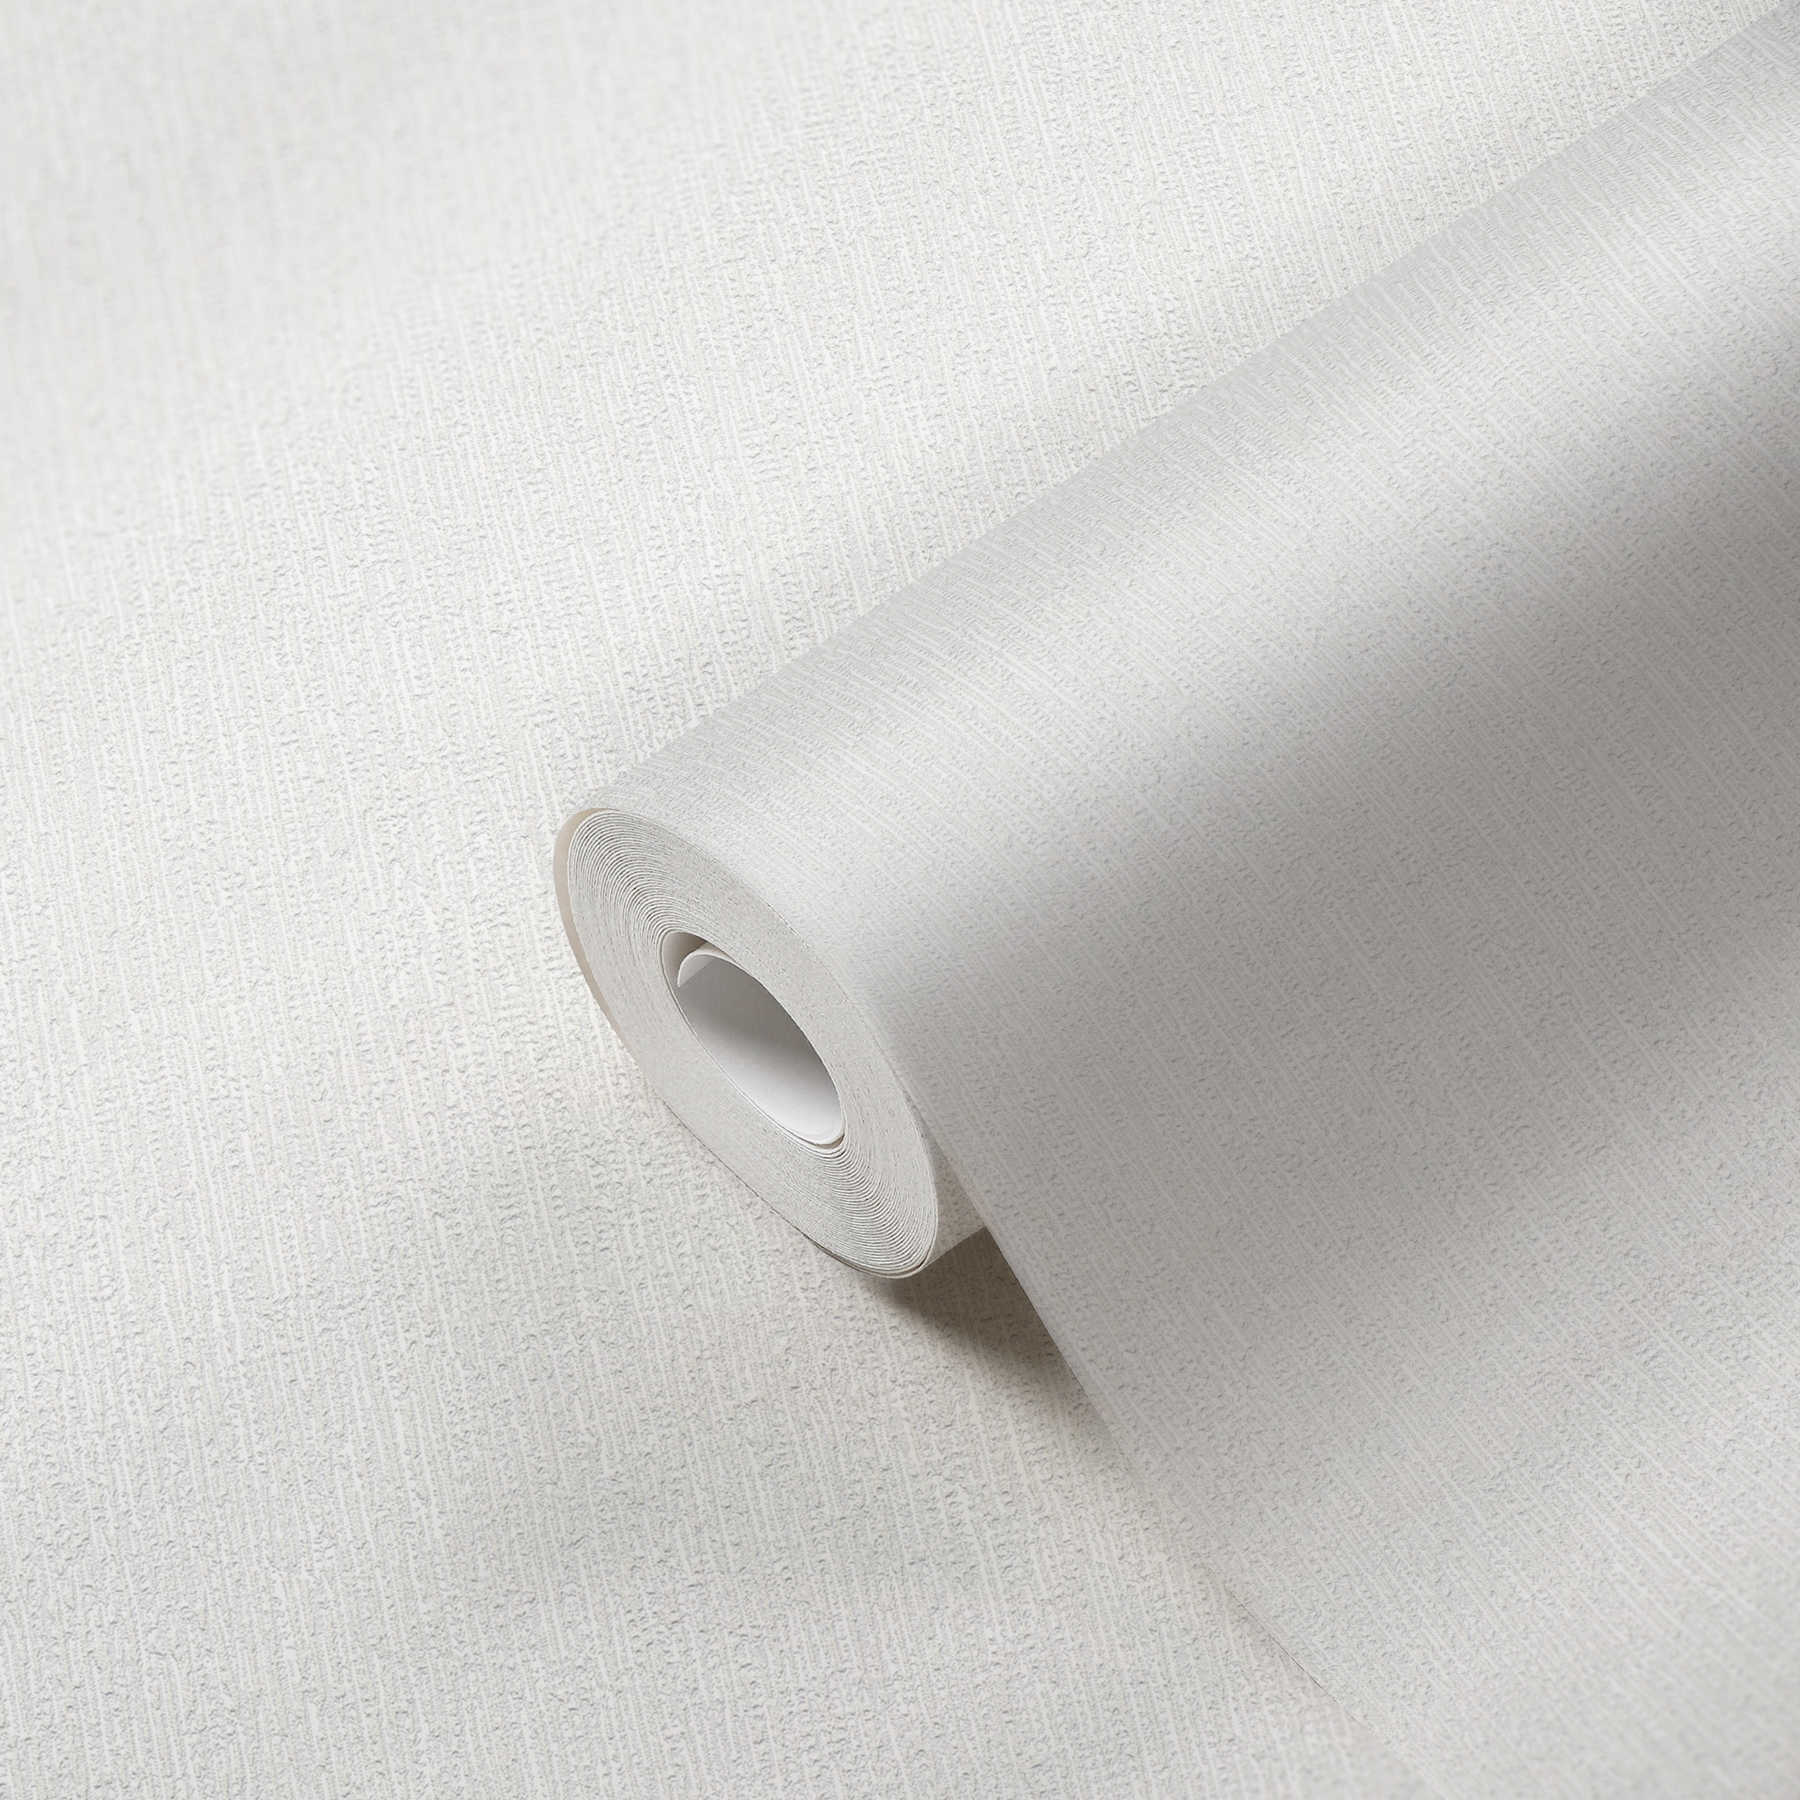             papel pintado texturizado no tejido gris claro blanco con motivos de la naturaleza
        